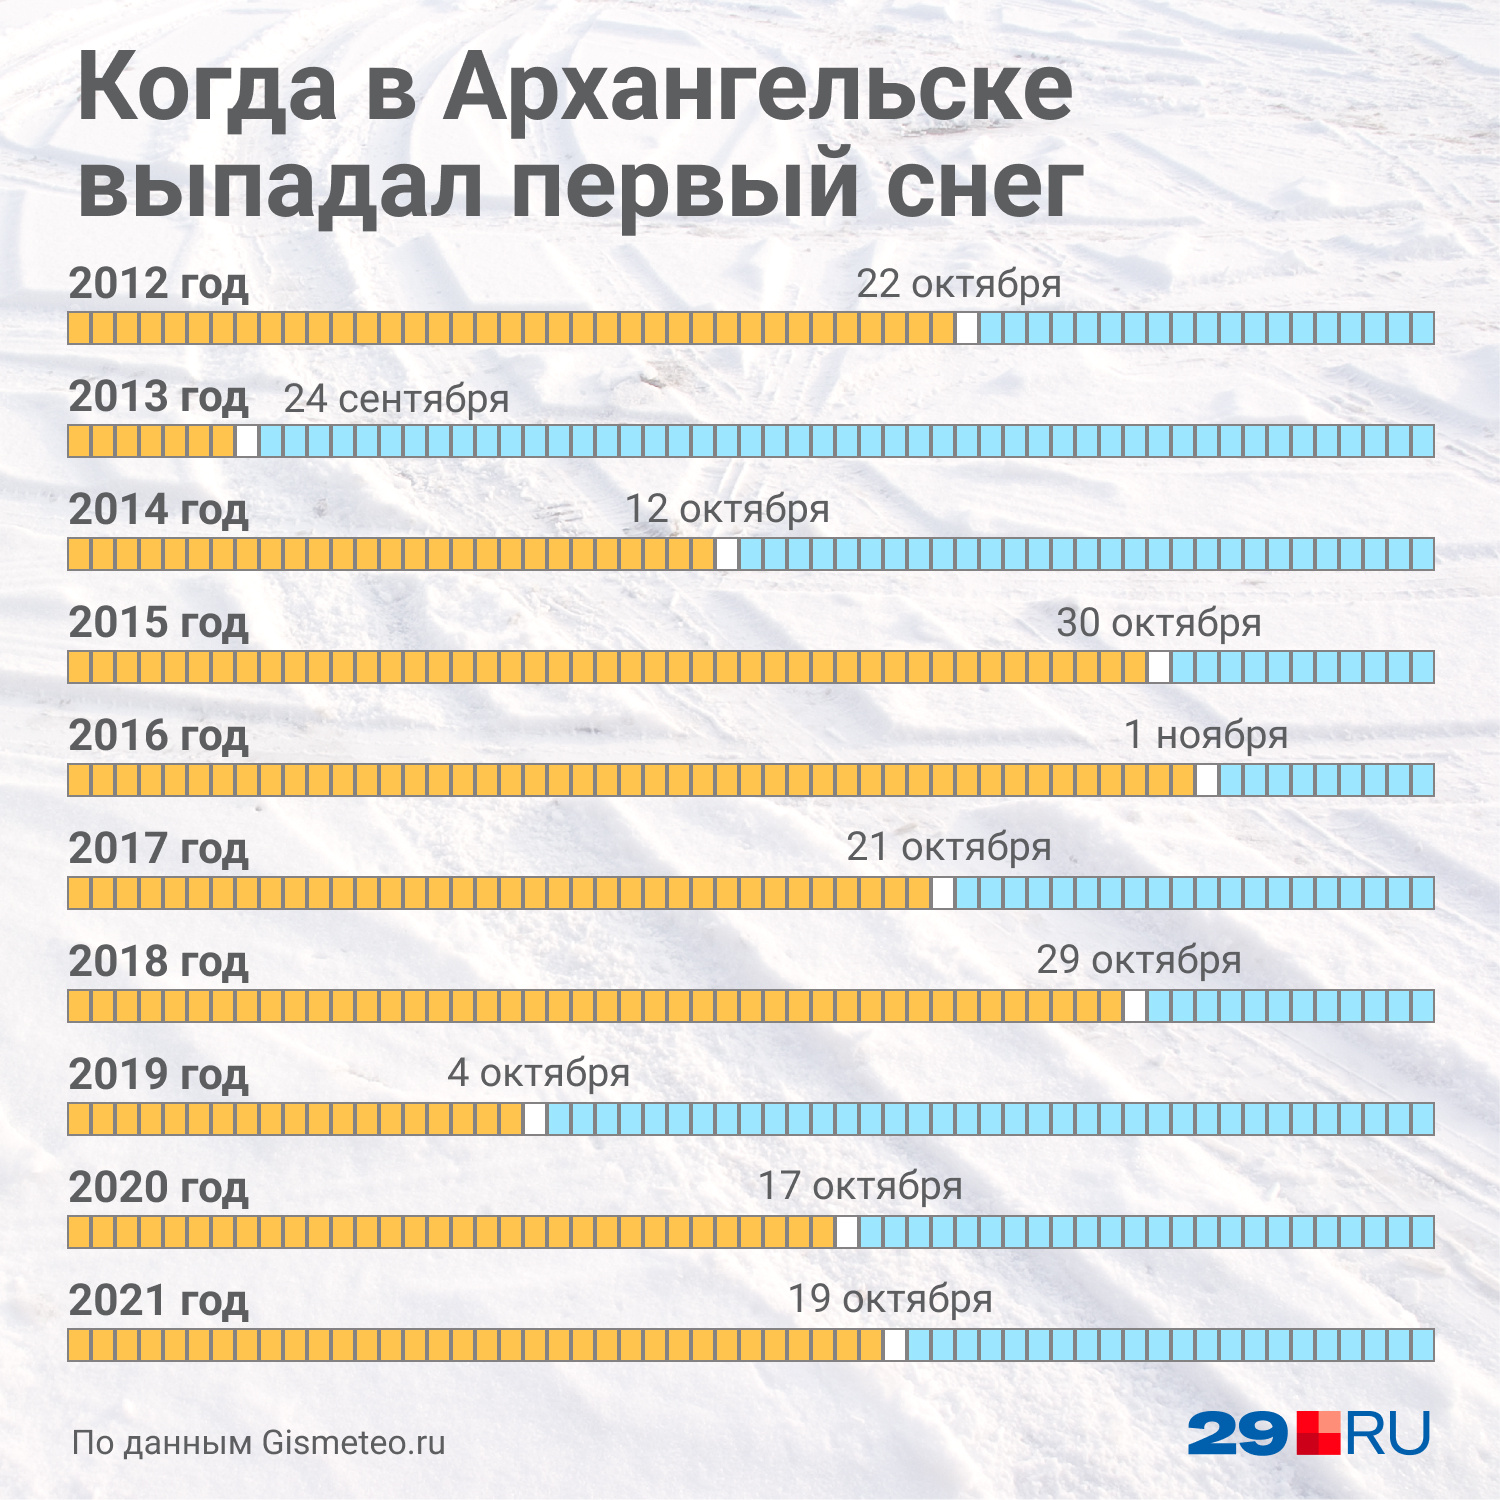 Собрали в простой инфографике, когда за последние 10 лет выпадал первый снег в Архангельске